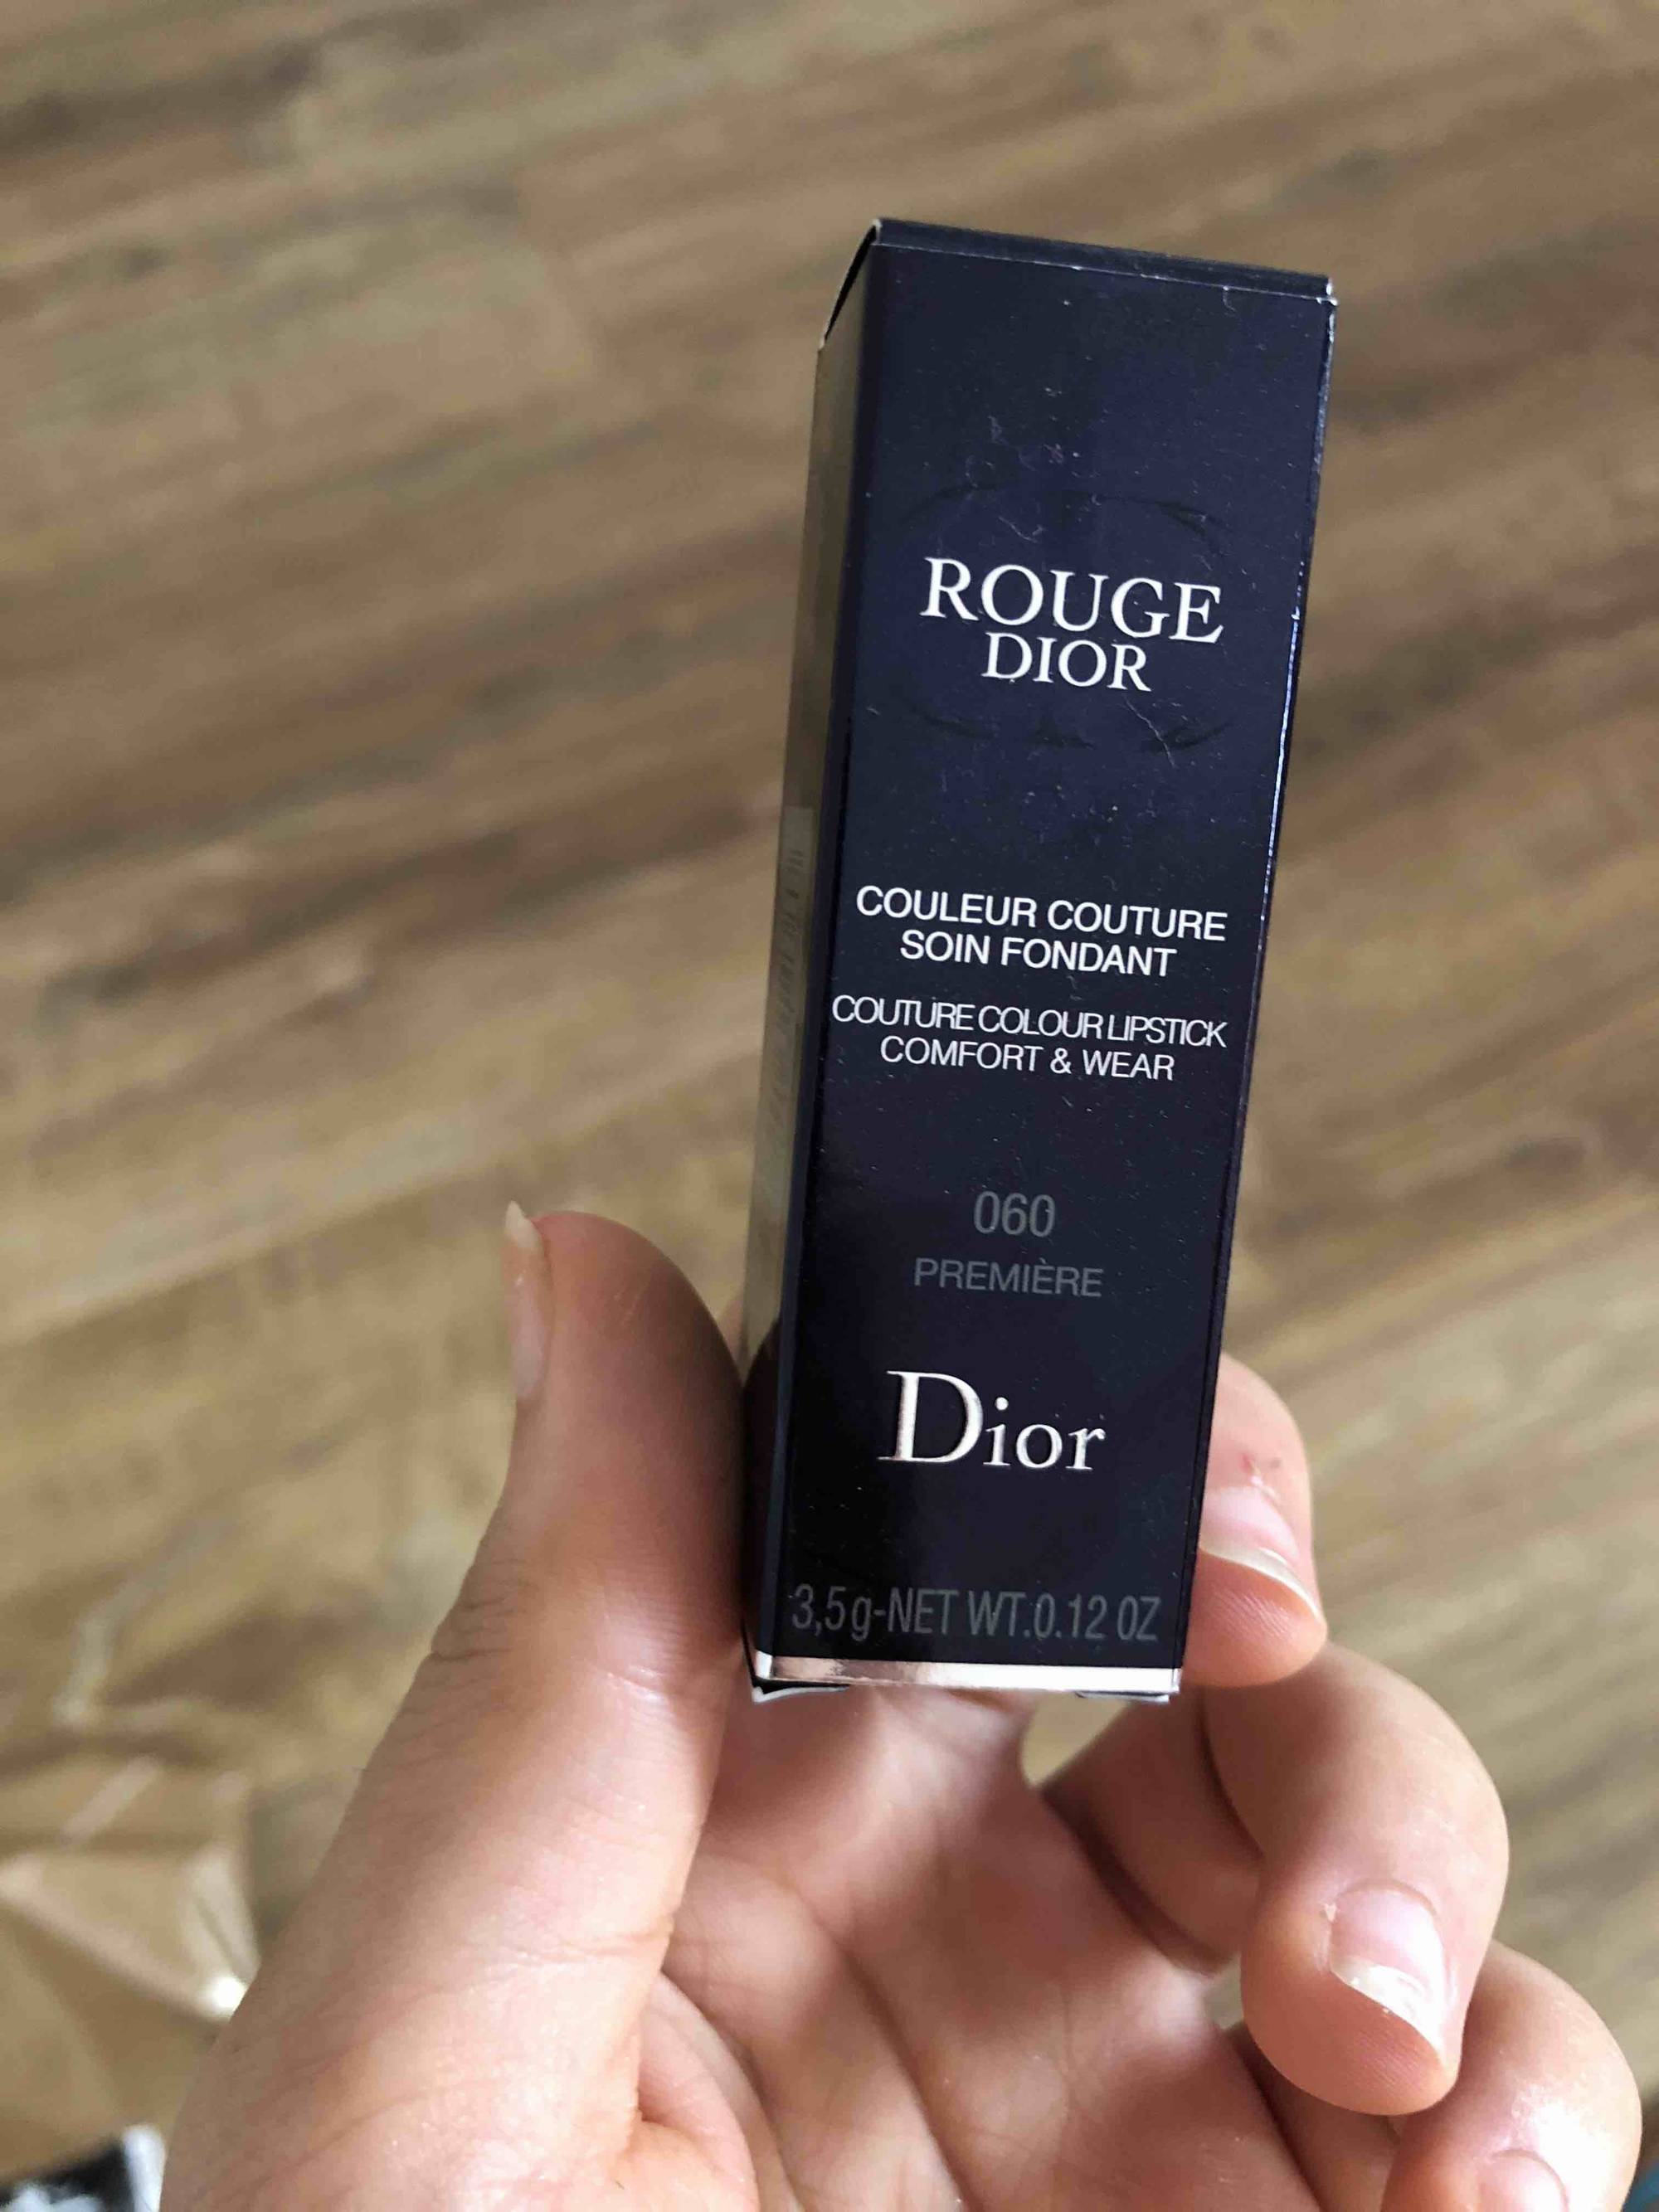 DIOR - Rouge Dior - Couleur couture soin fondant 060 première